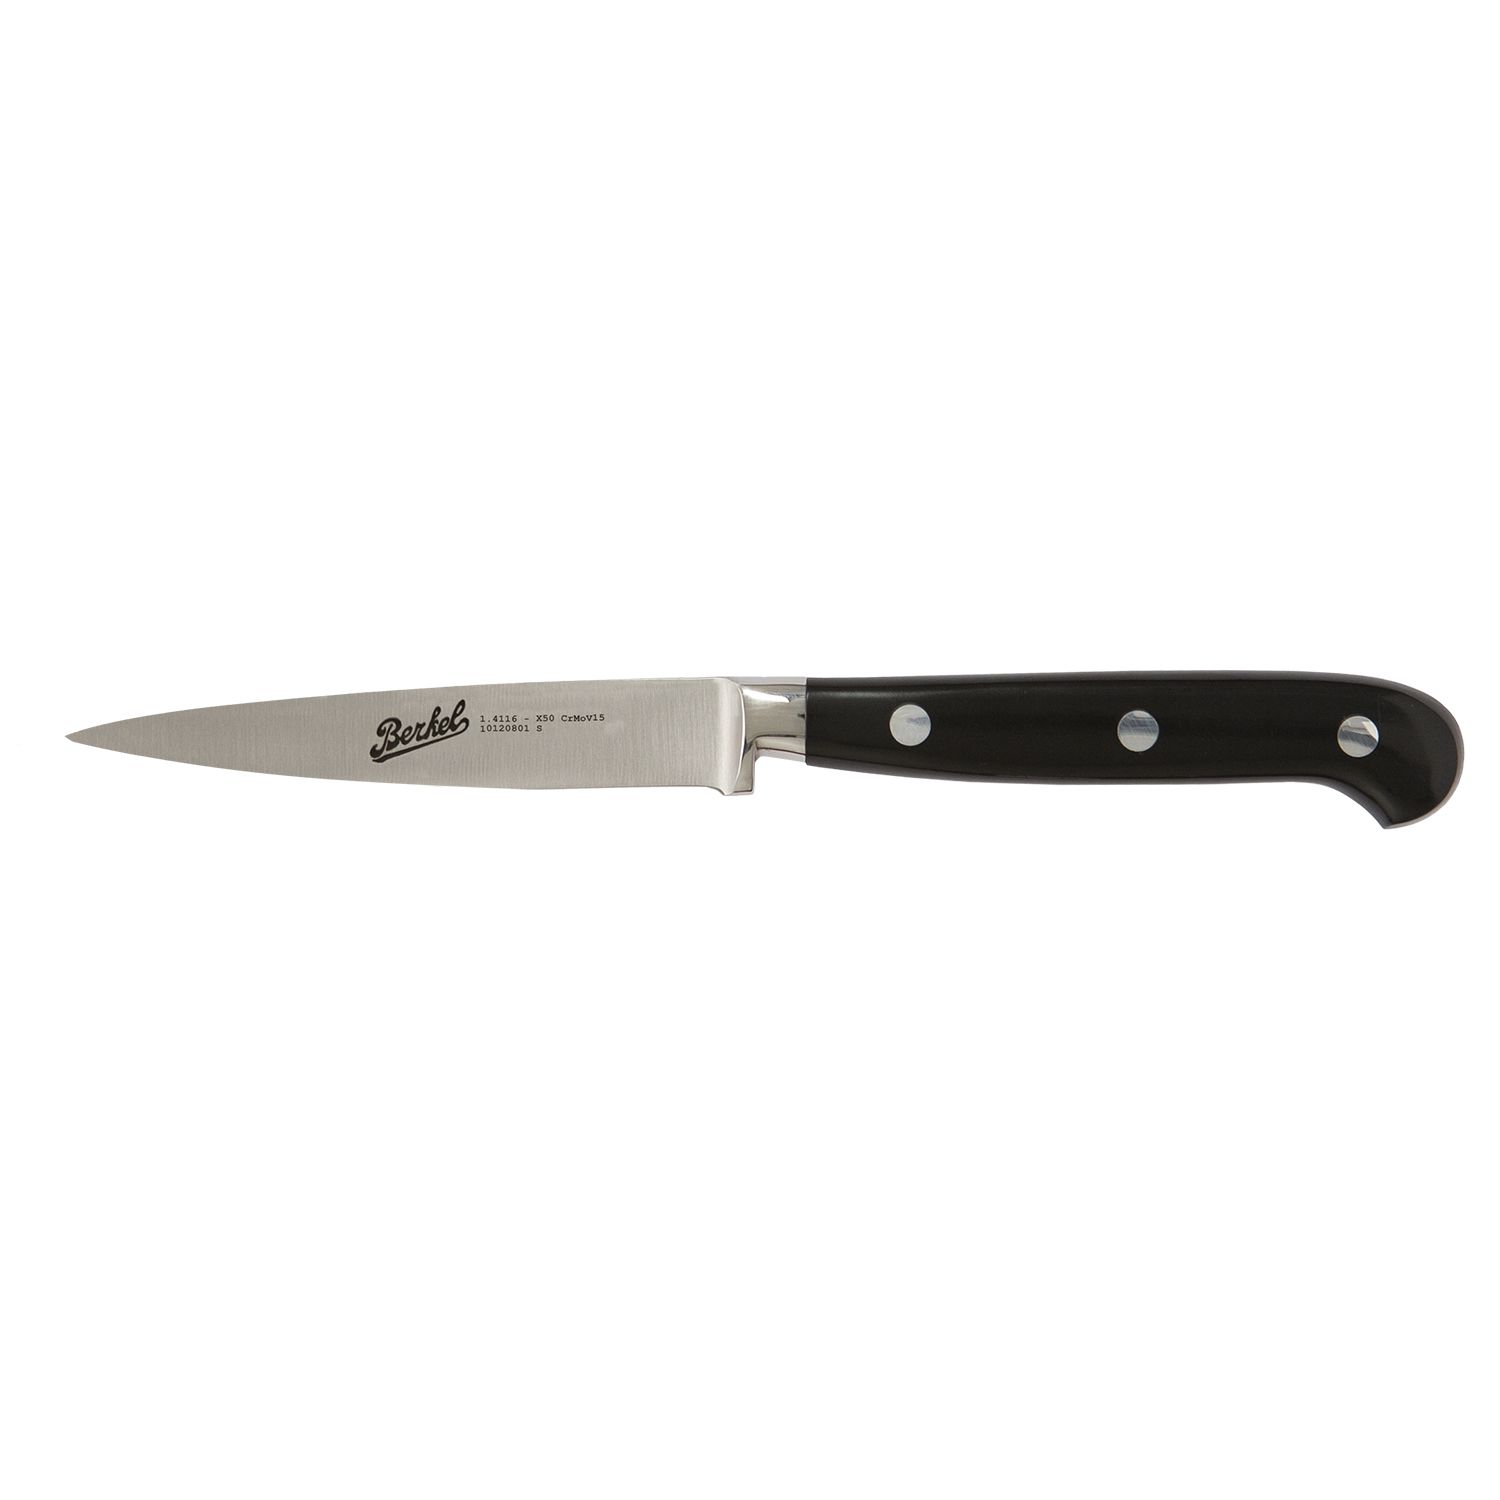 Paring knife cm.7,5 Stainless Steel Berkel Adhoc Handle Glossy Black Resin